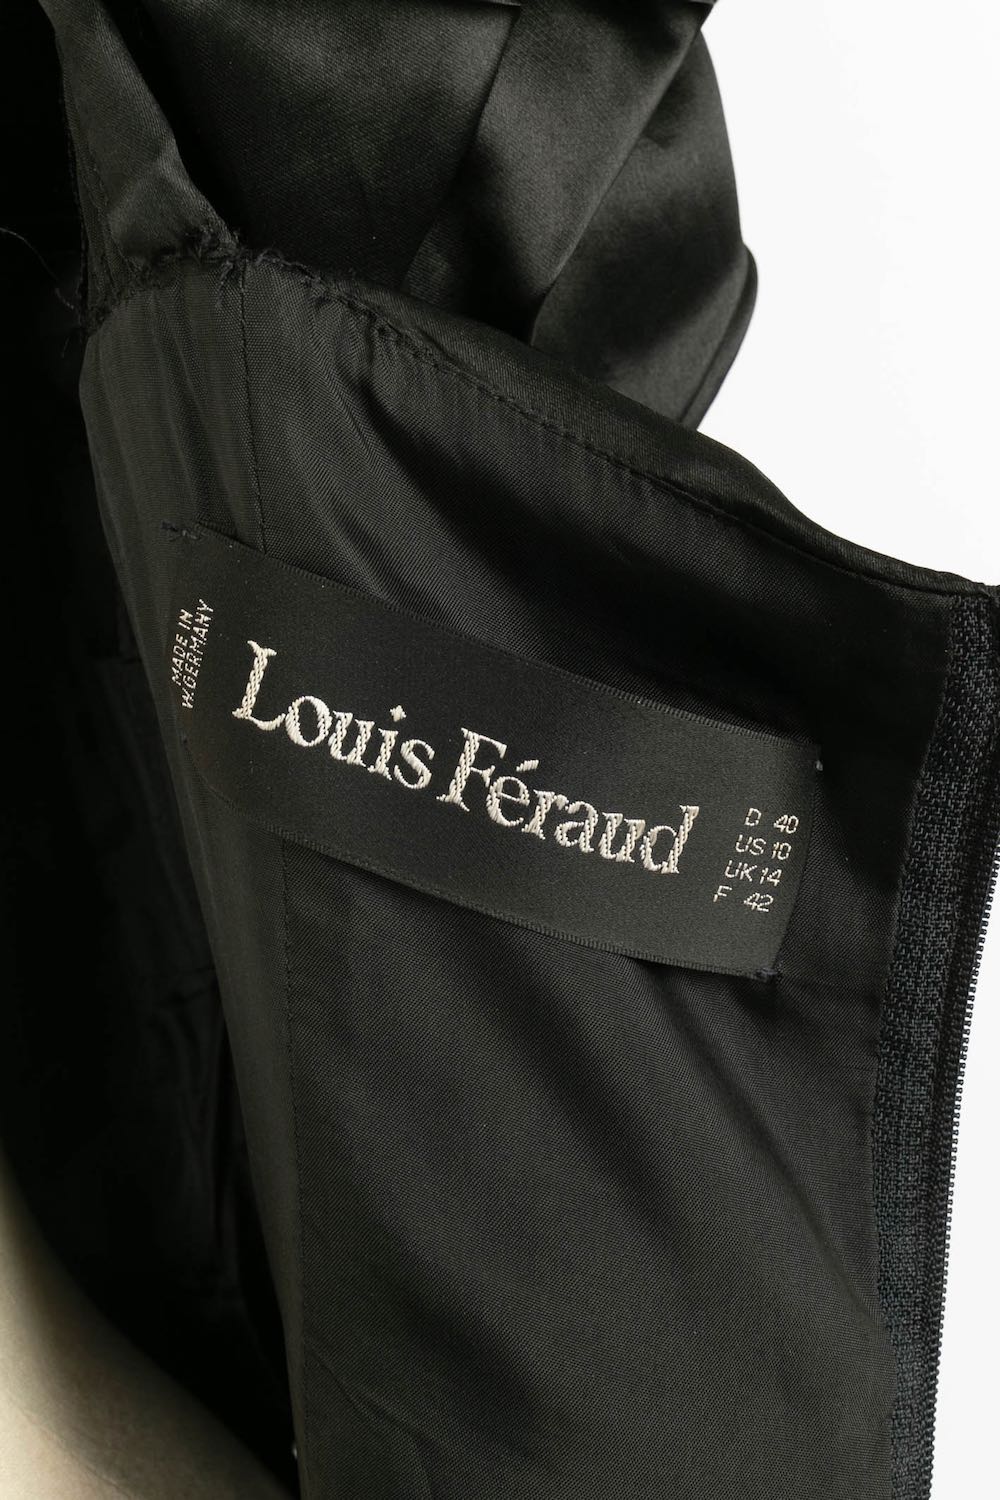 Louis Féraud dress – Les Merveilles De Babellou